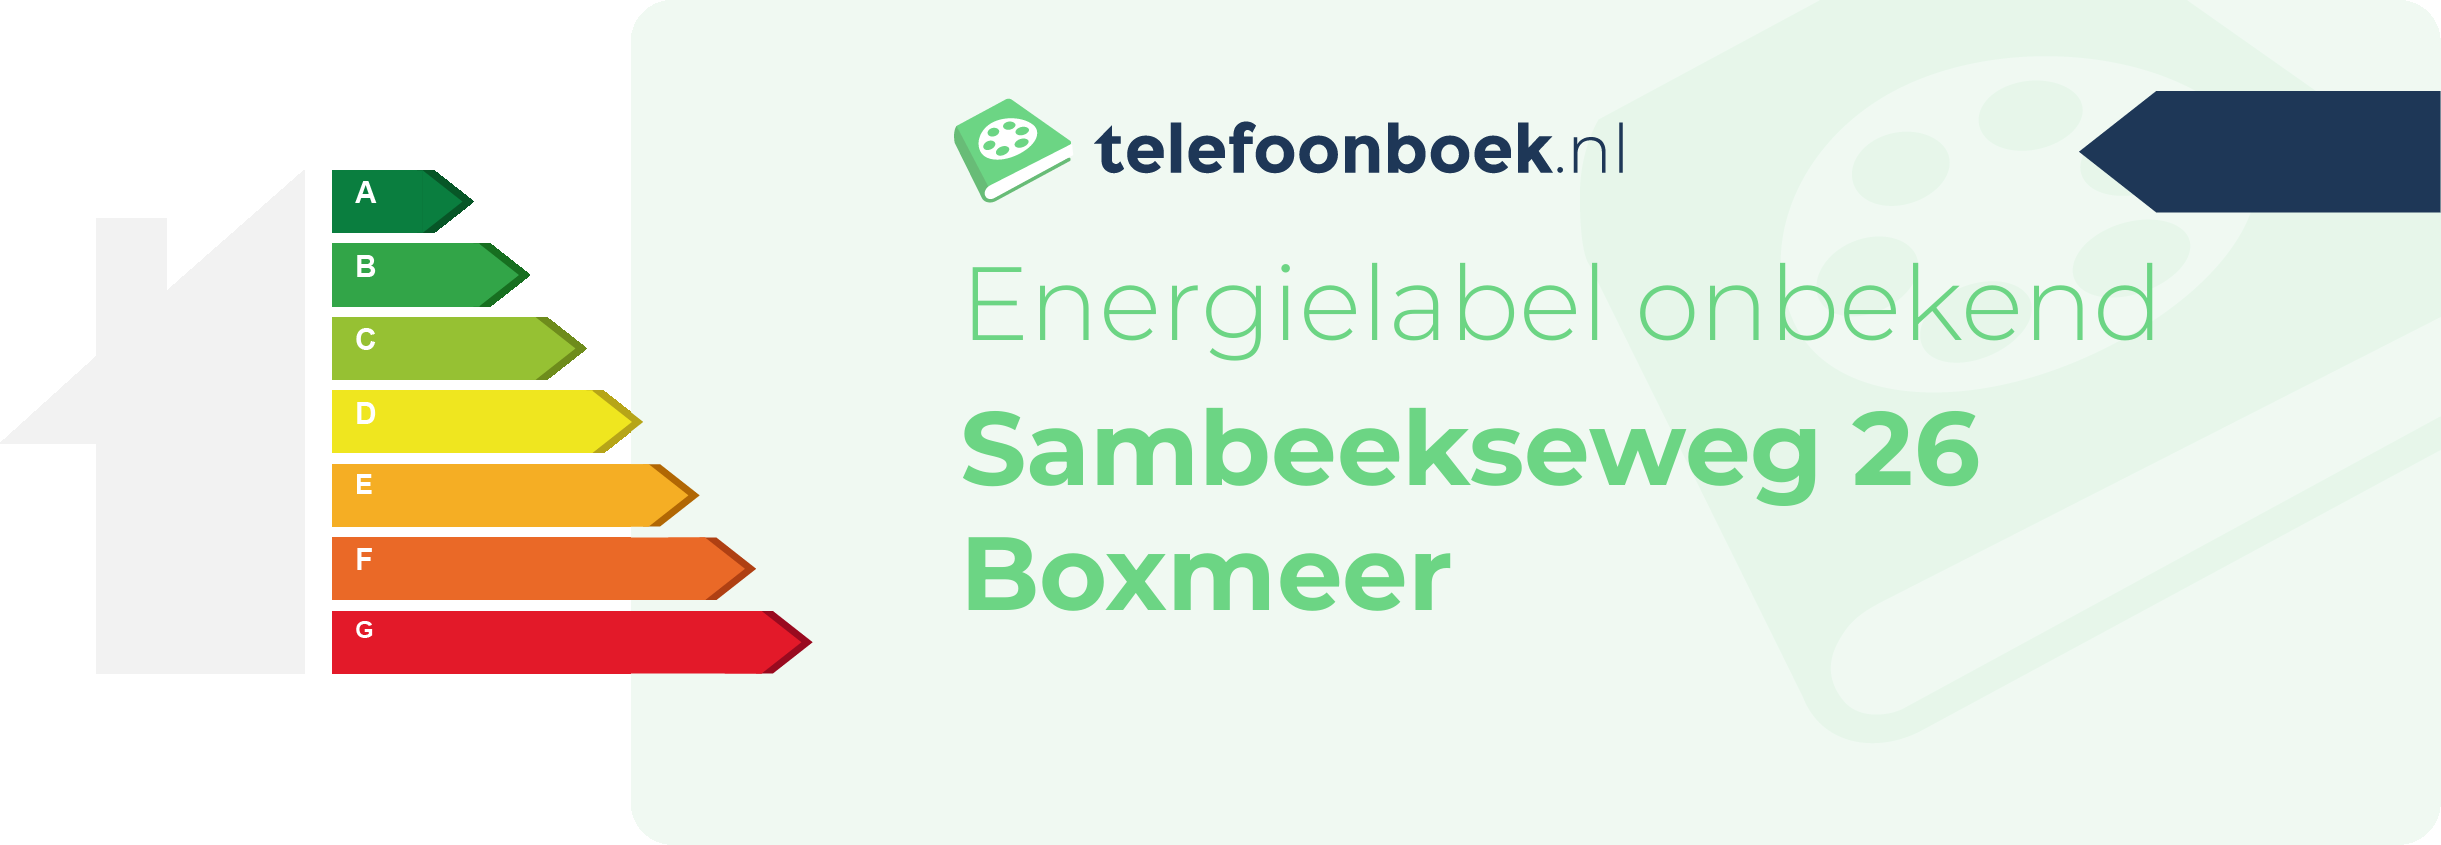 Energielabel Sambeekseweg 26 Boxmeer